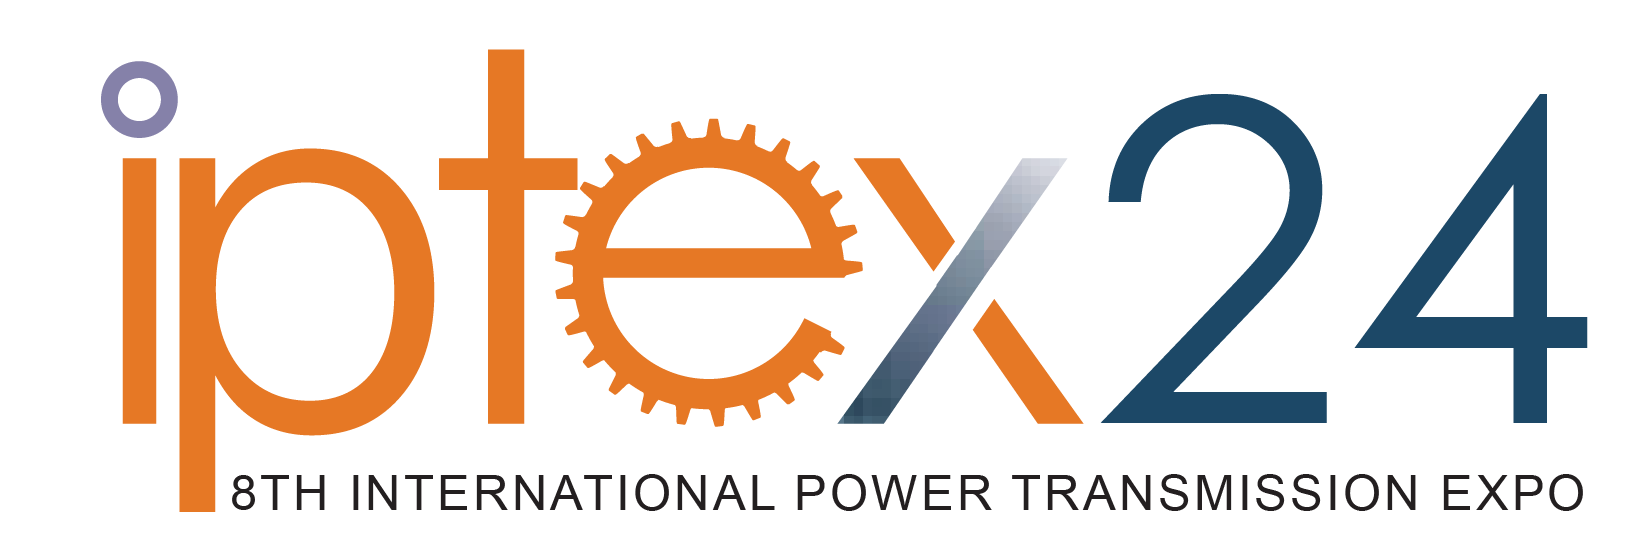 iptex-logo